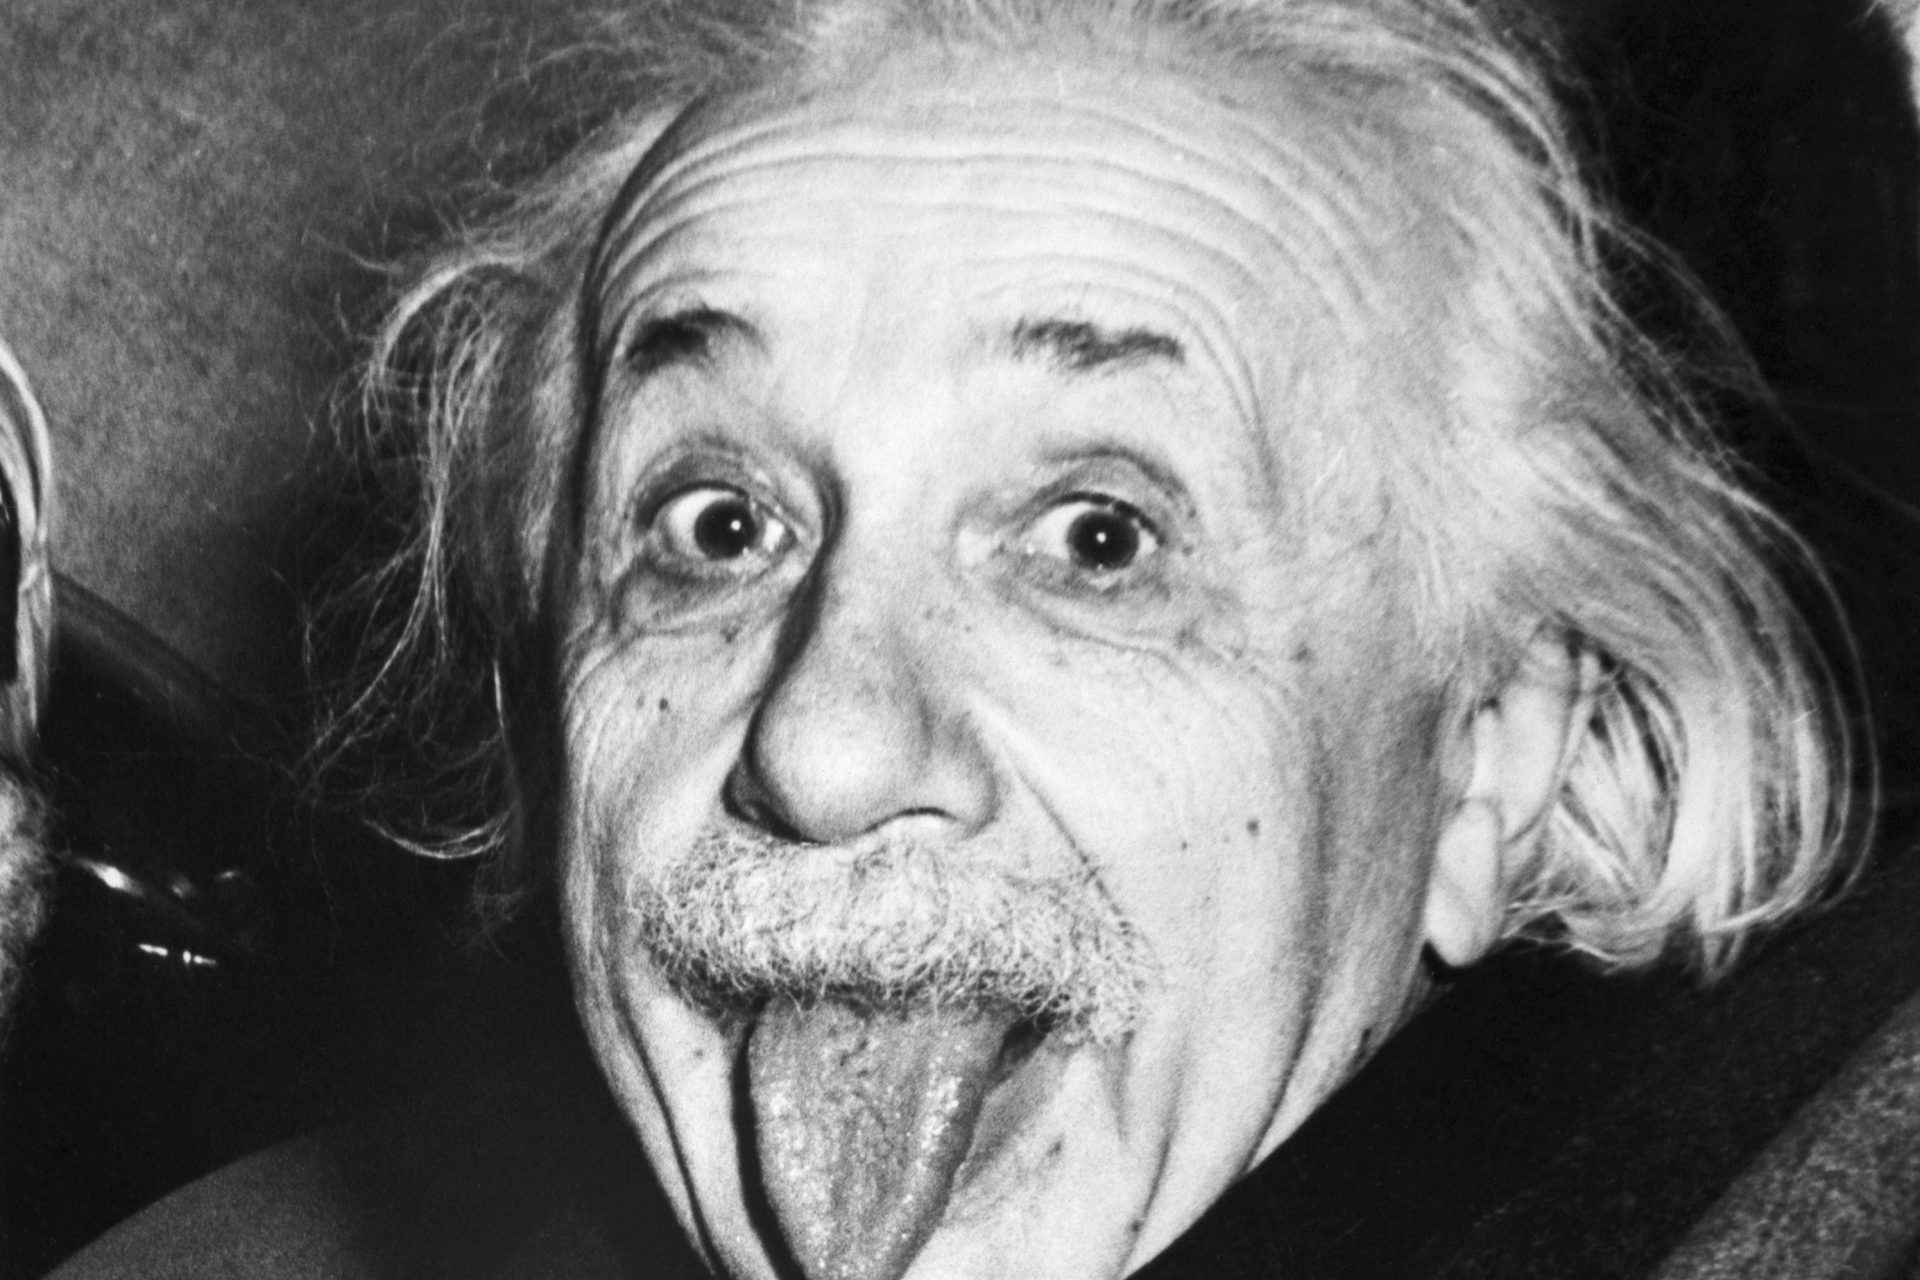 Le jour historique où une éclipse a prouvé la théorie de la relativité générale d'Einstein